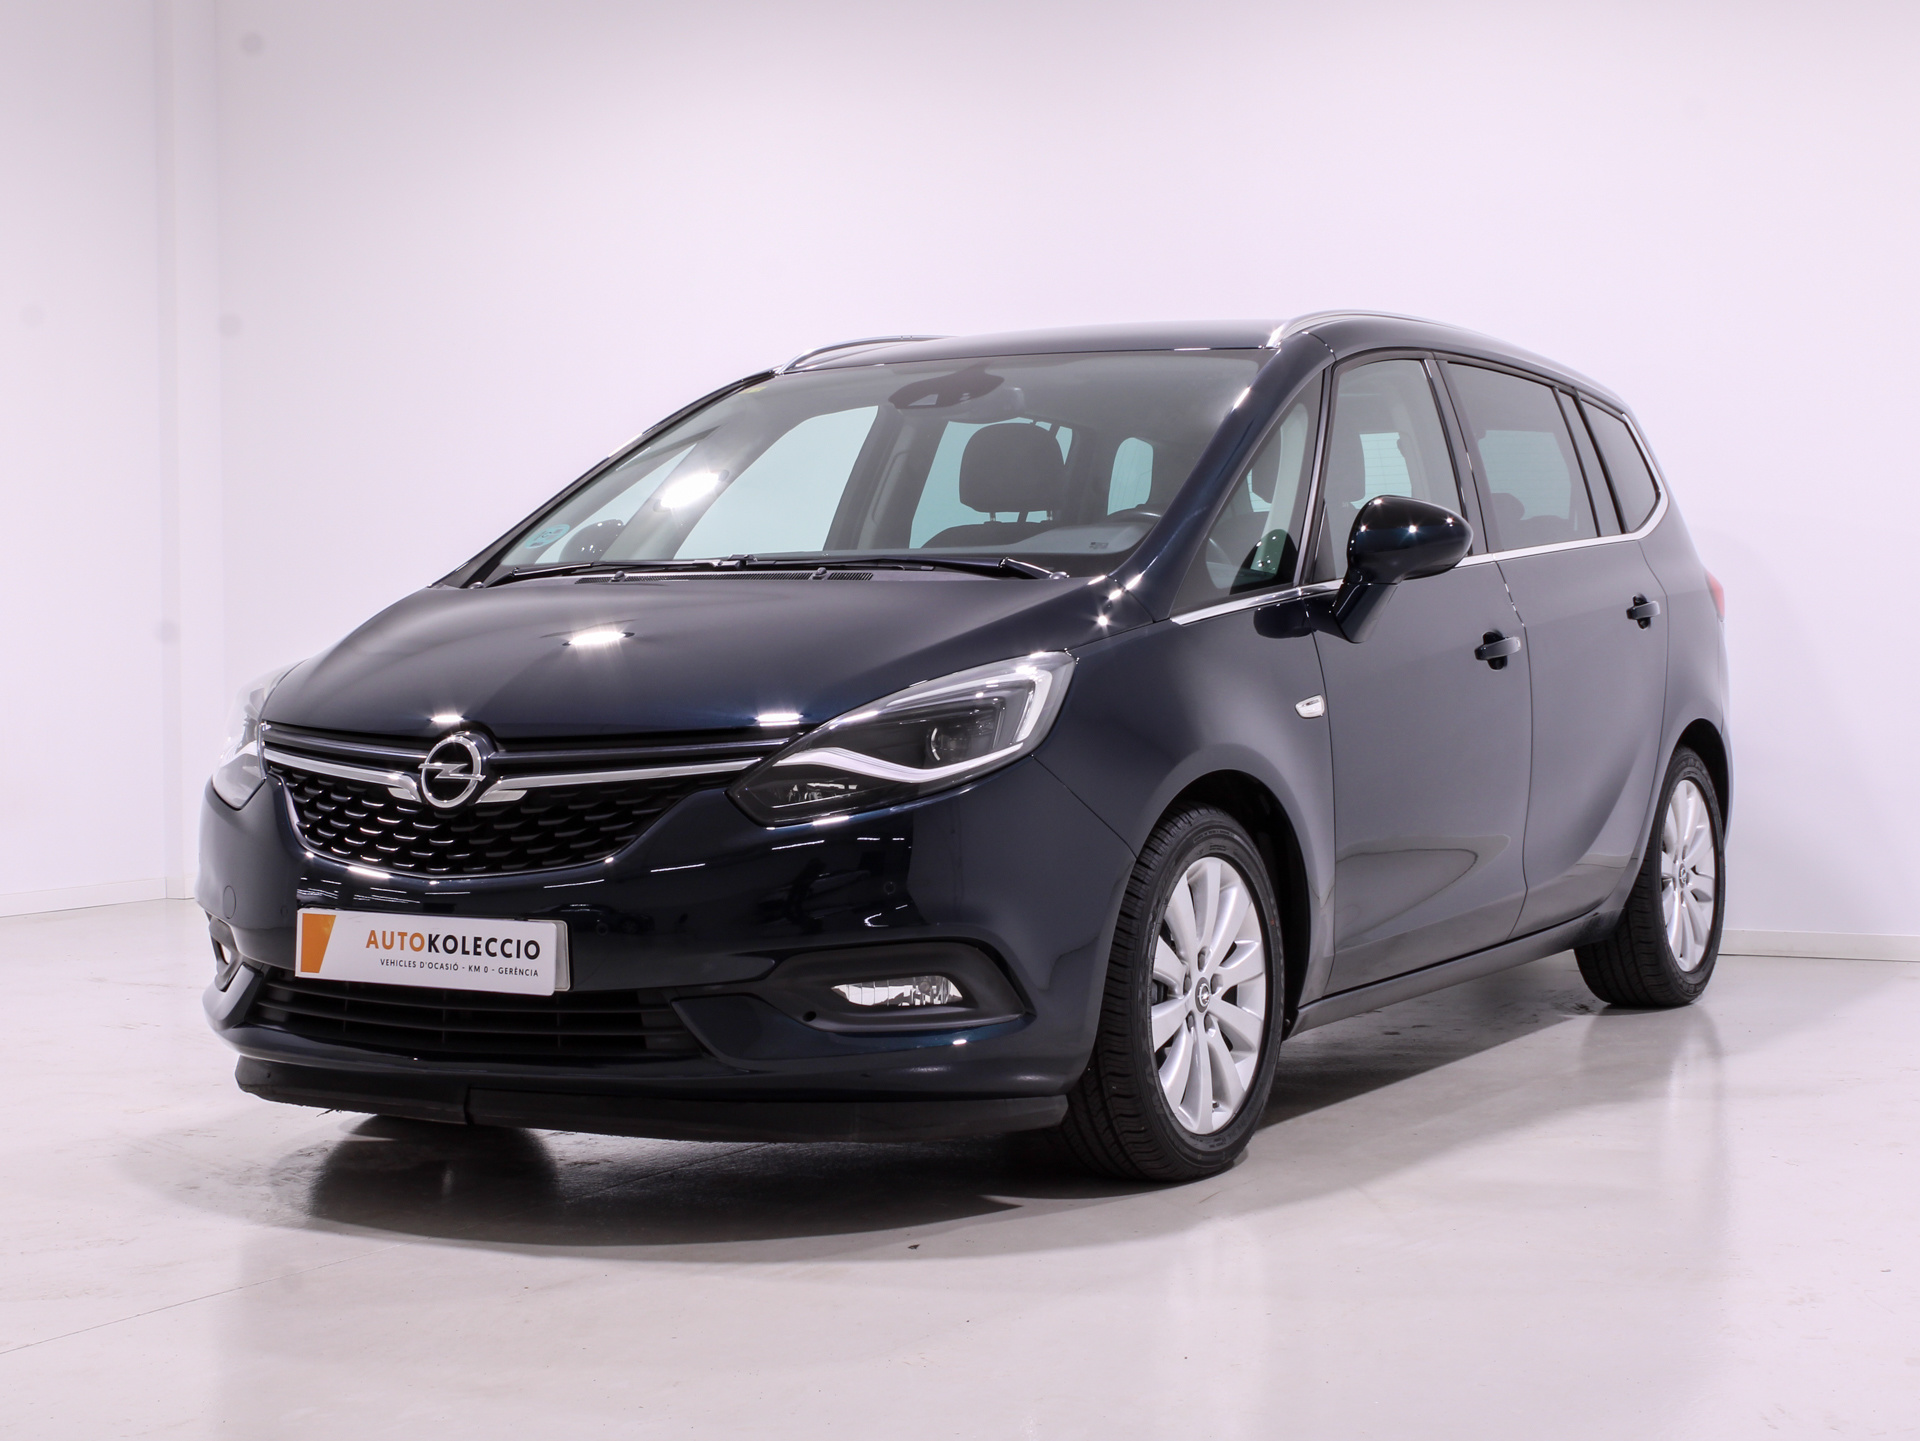 Opel Zafira 1.4 Turbo S&S Family 7 Plazas 103 kW (140 CV) Vehículo usado en Valencia - 1